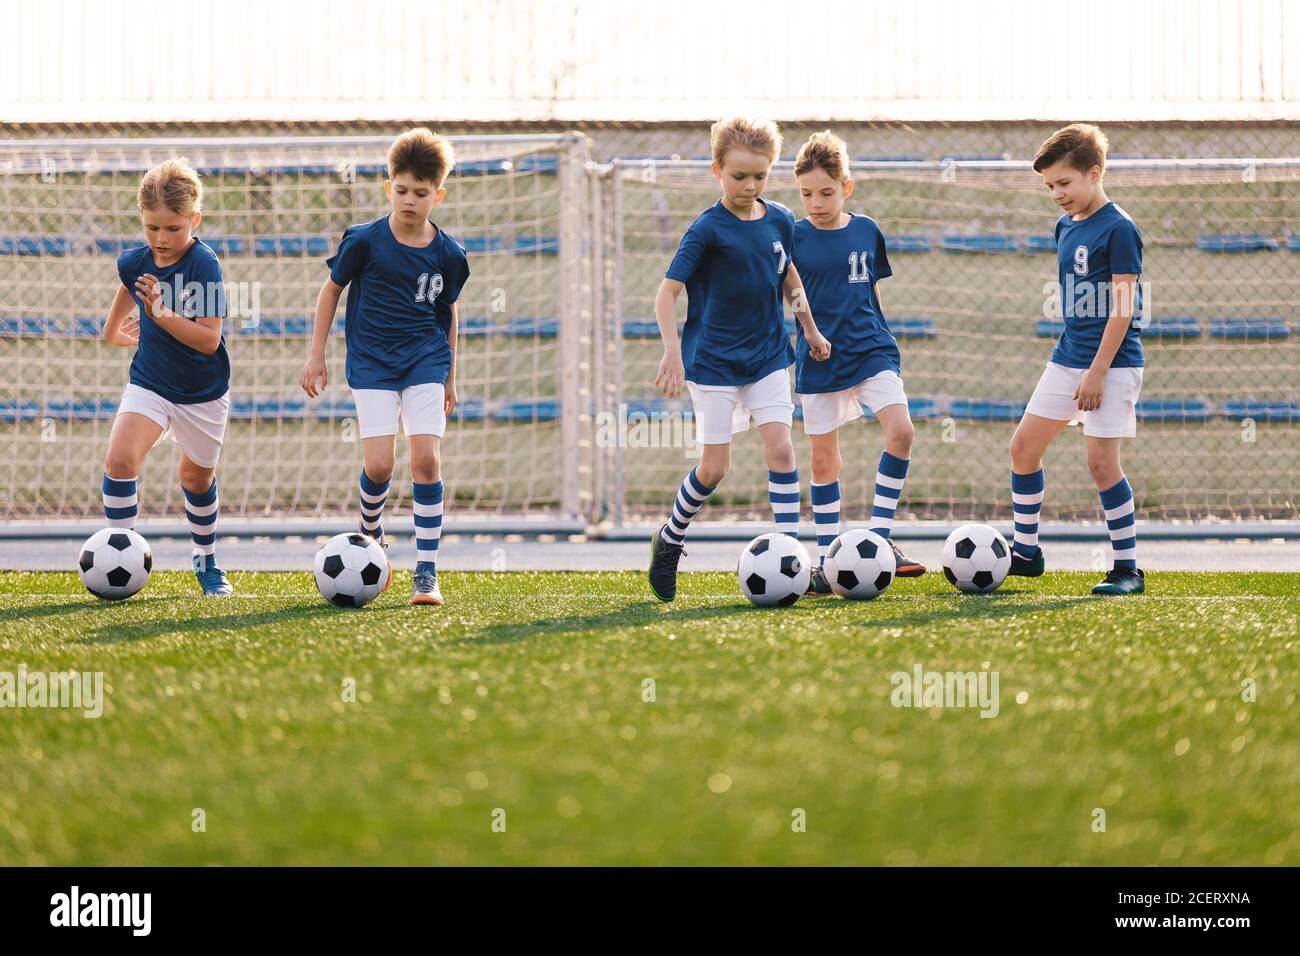 Groupe de garçons Kicking Soccer balles sur terrain de sport de gazon. Équipe de sports pour enfants sur l'entraînement de football scolaire. Happy Kids Making Sports Banque D'Images